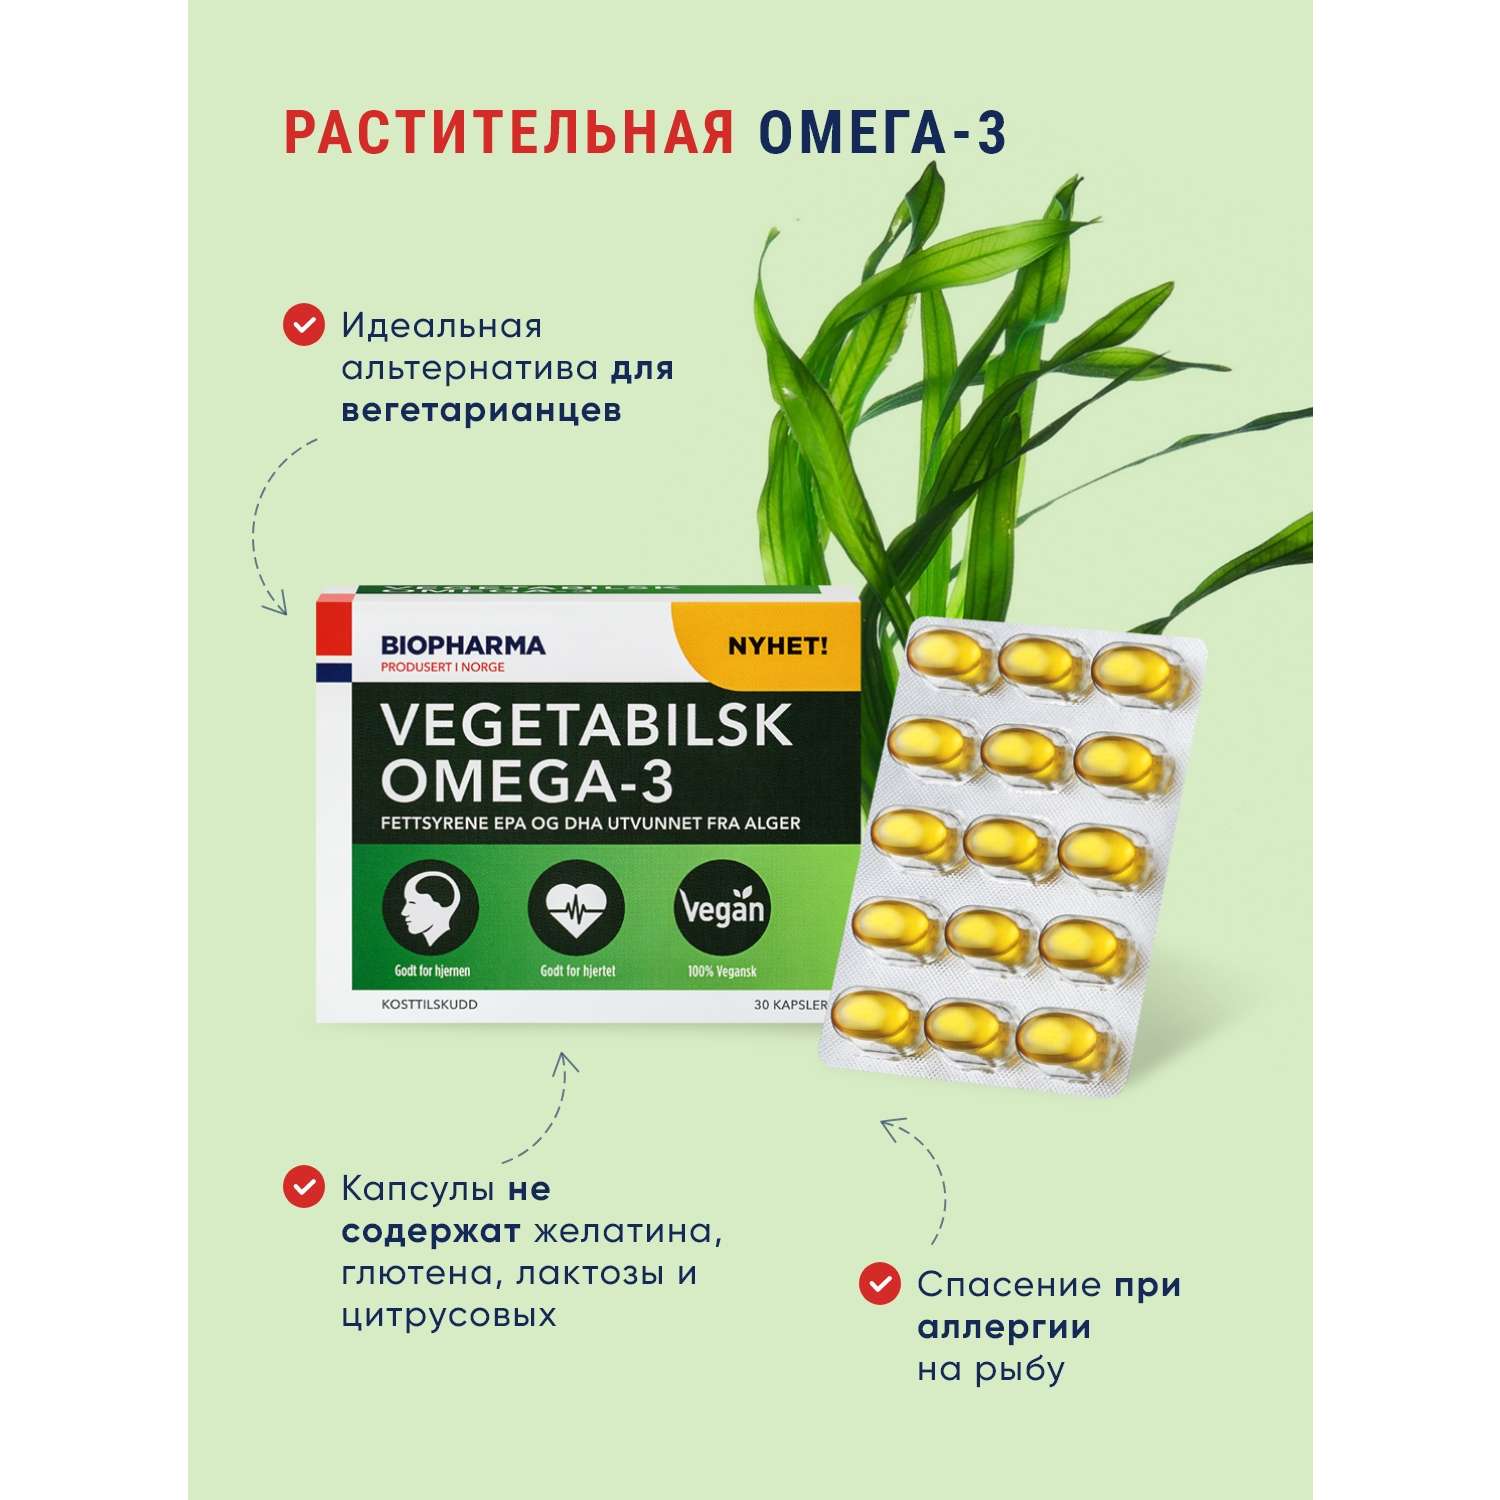 БАДы Biopharma Вегетарианская Омега 3 из водорослей Vegetabilsk Omega 3 - фото 5